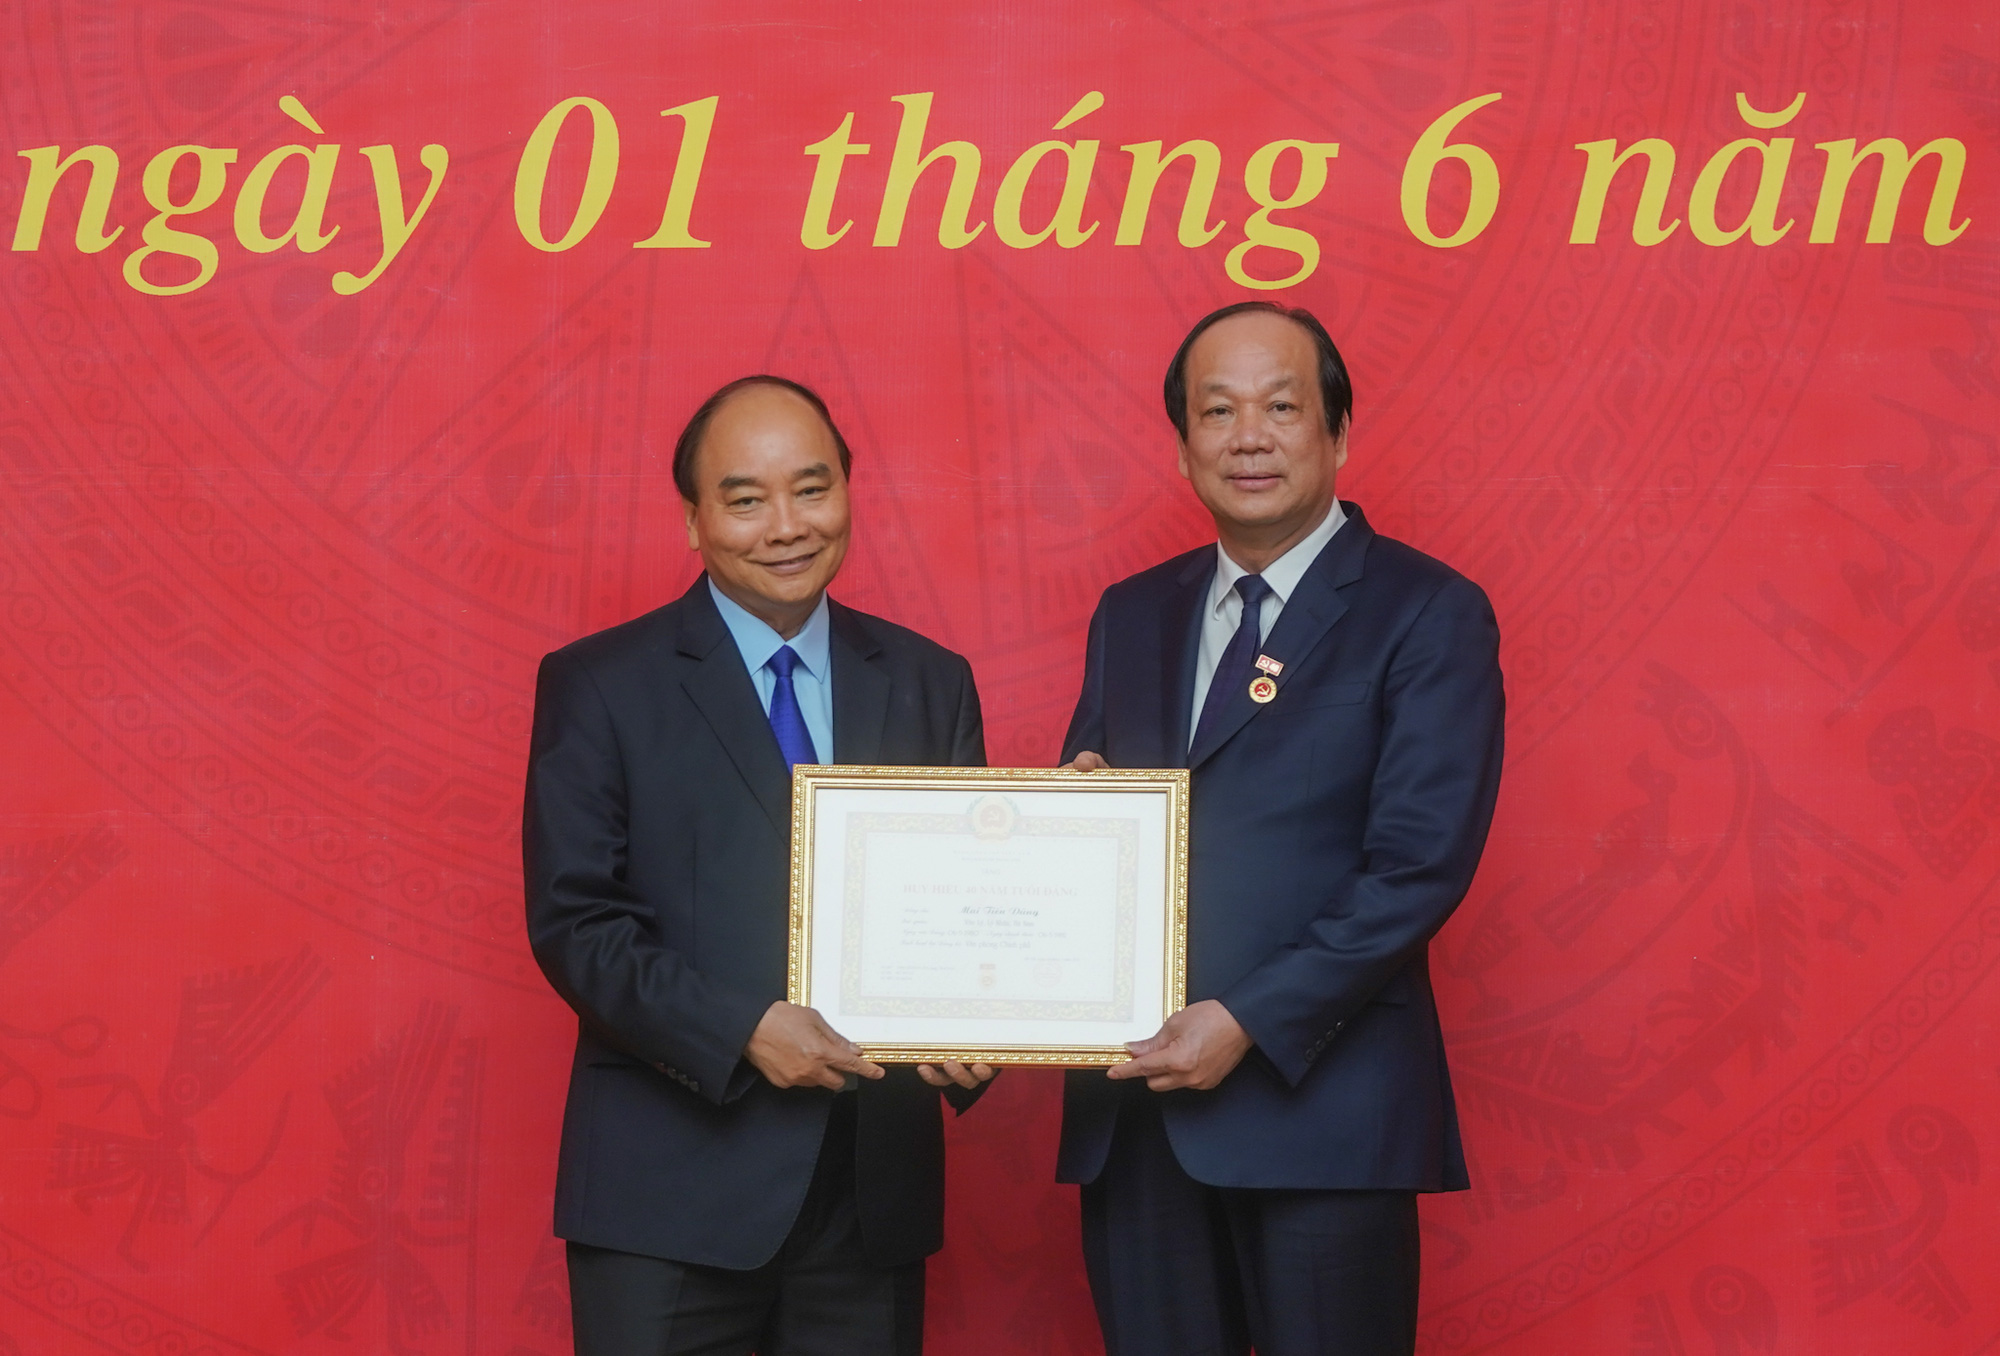 Bộ trưởng, Chủ nhiệm Văn phòng Chính phủ nhận Huy hiệu cao quý của Đảng - Ảnh 1.